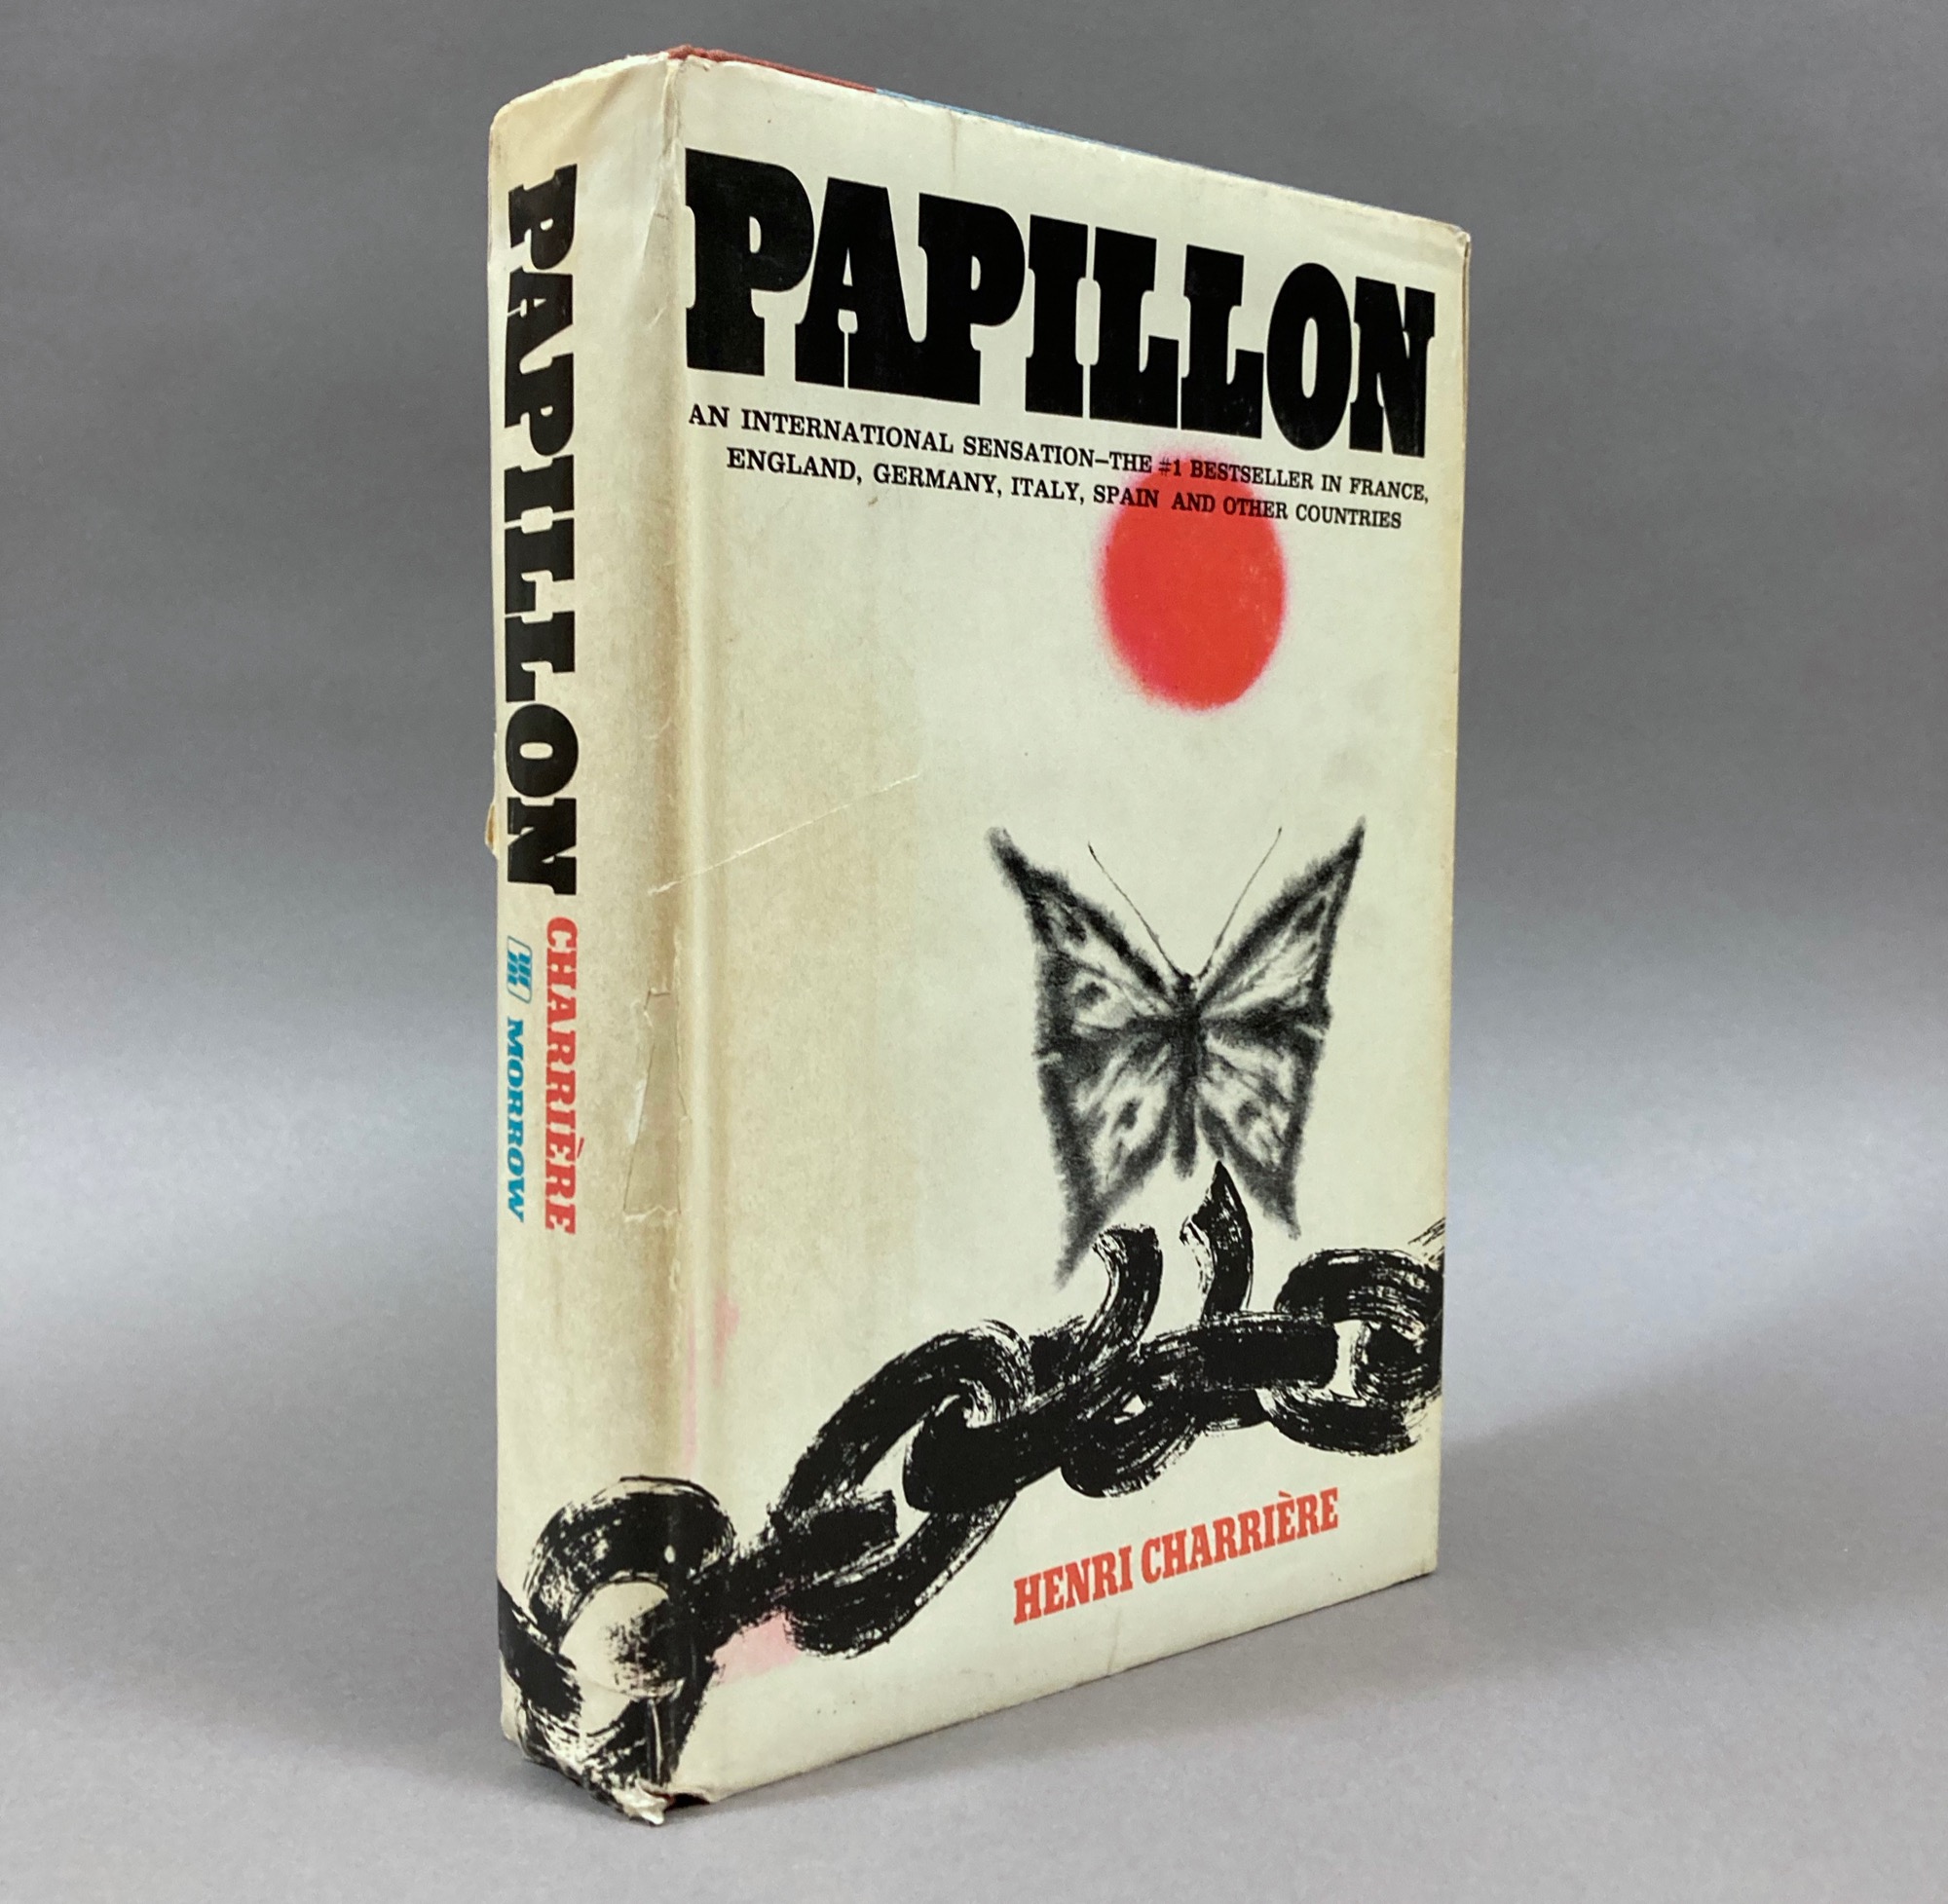 R-Coffret Post-it / Papillon livres